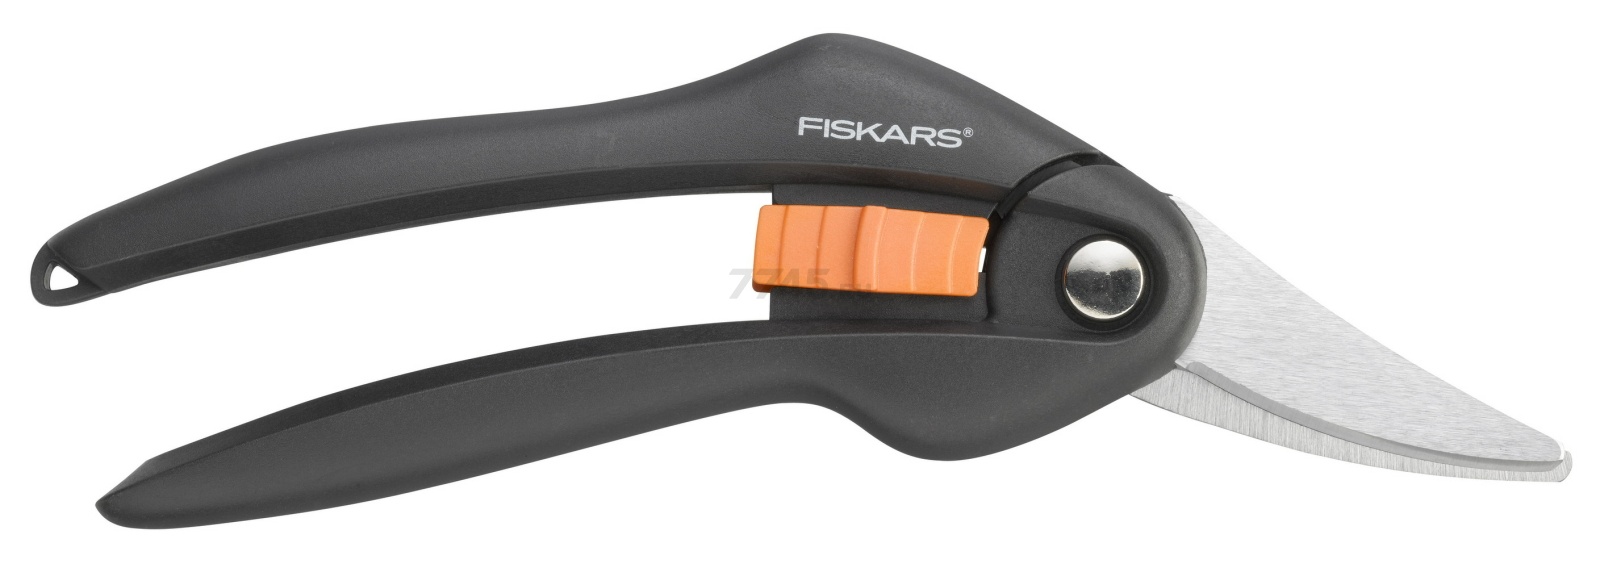 Ножницы универсальные FISKARS Single Step (111270)